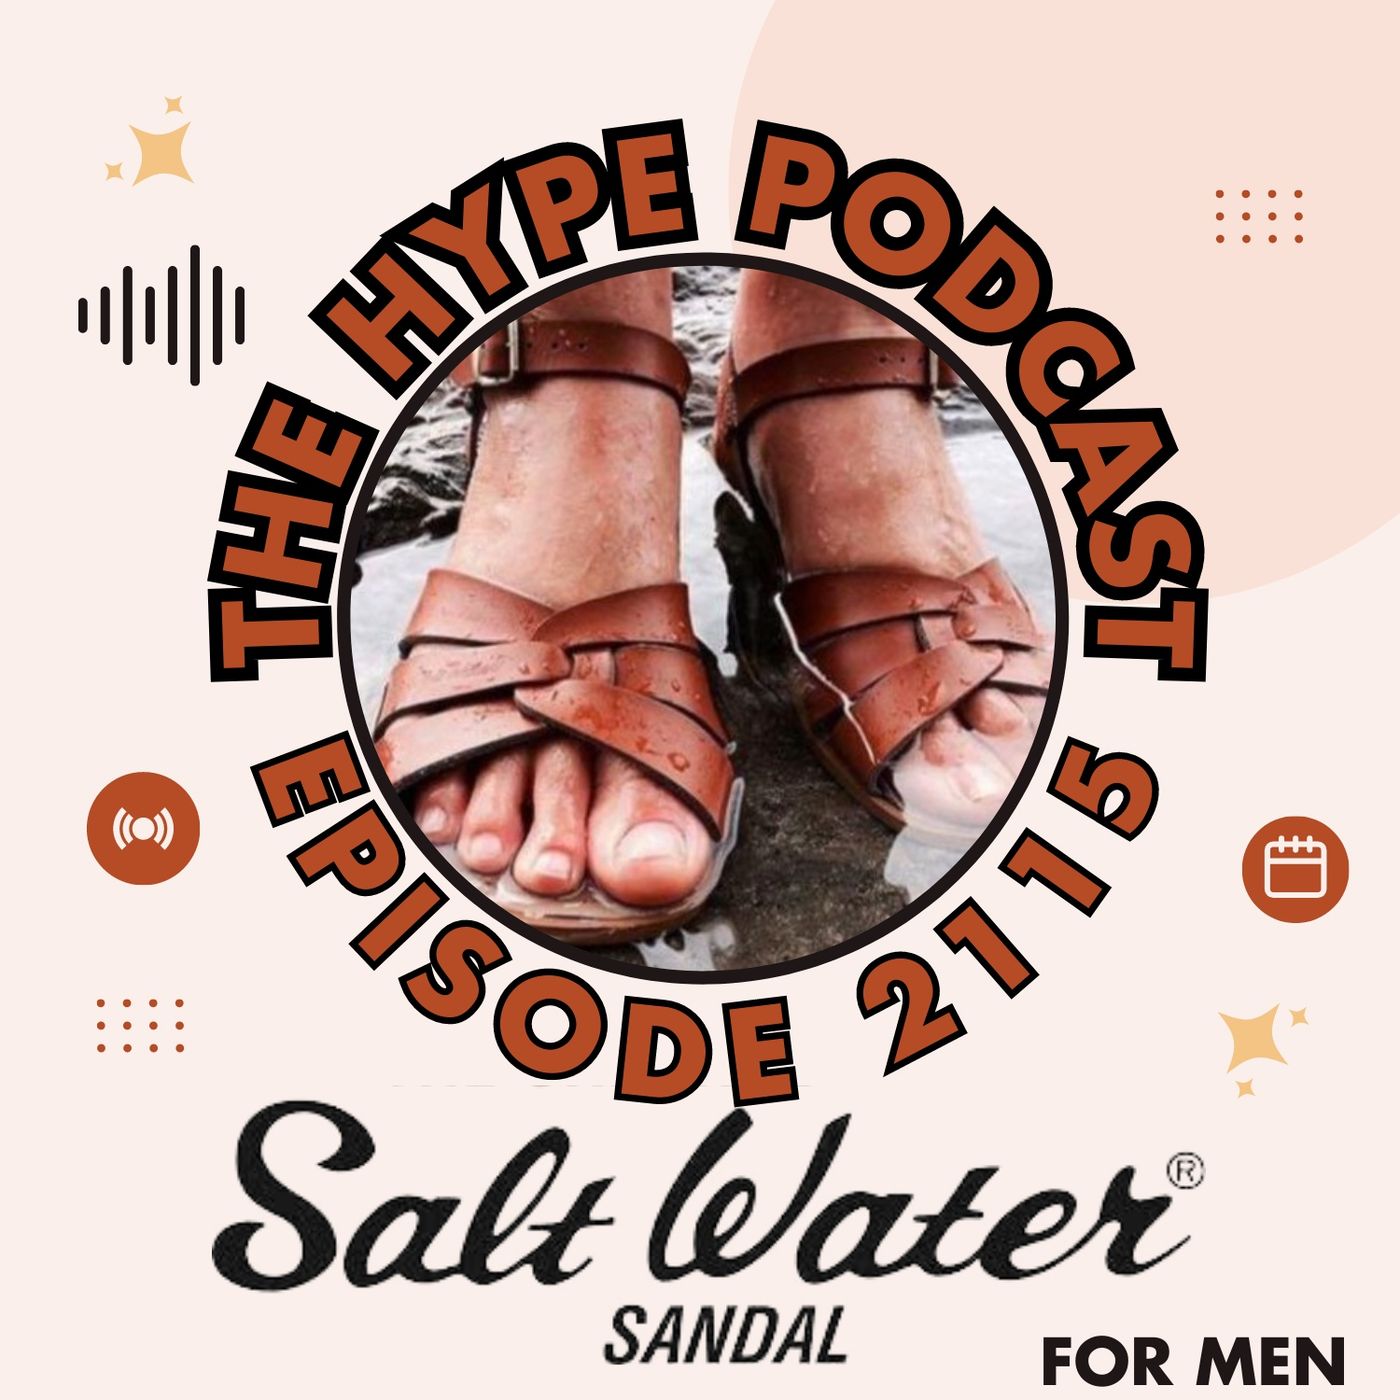 Episode 2115 SaltWater Sandals for Men